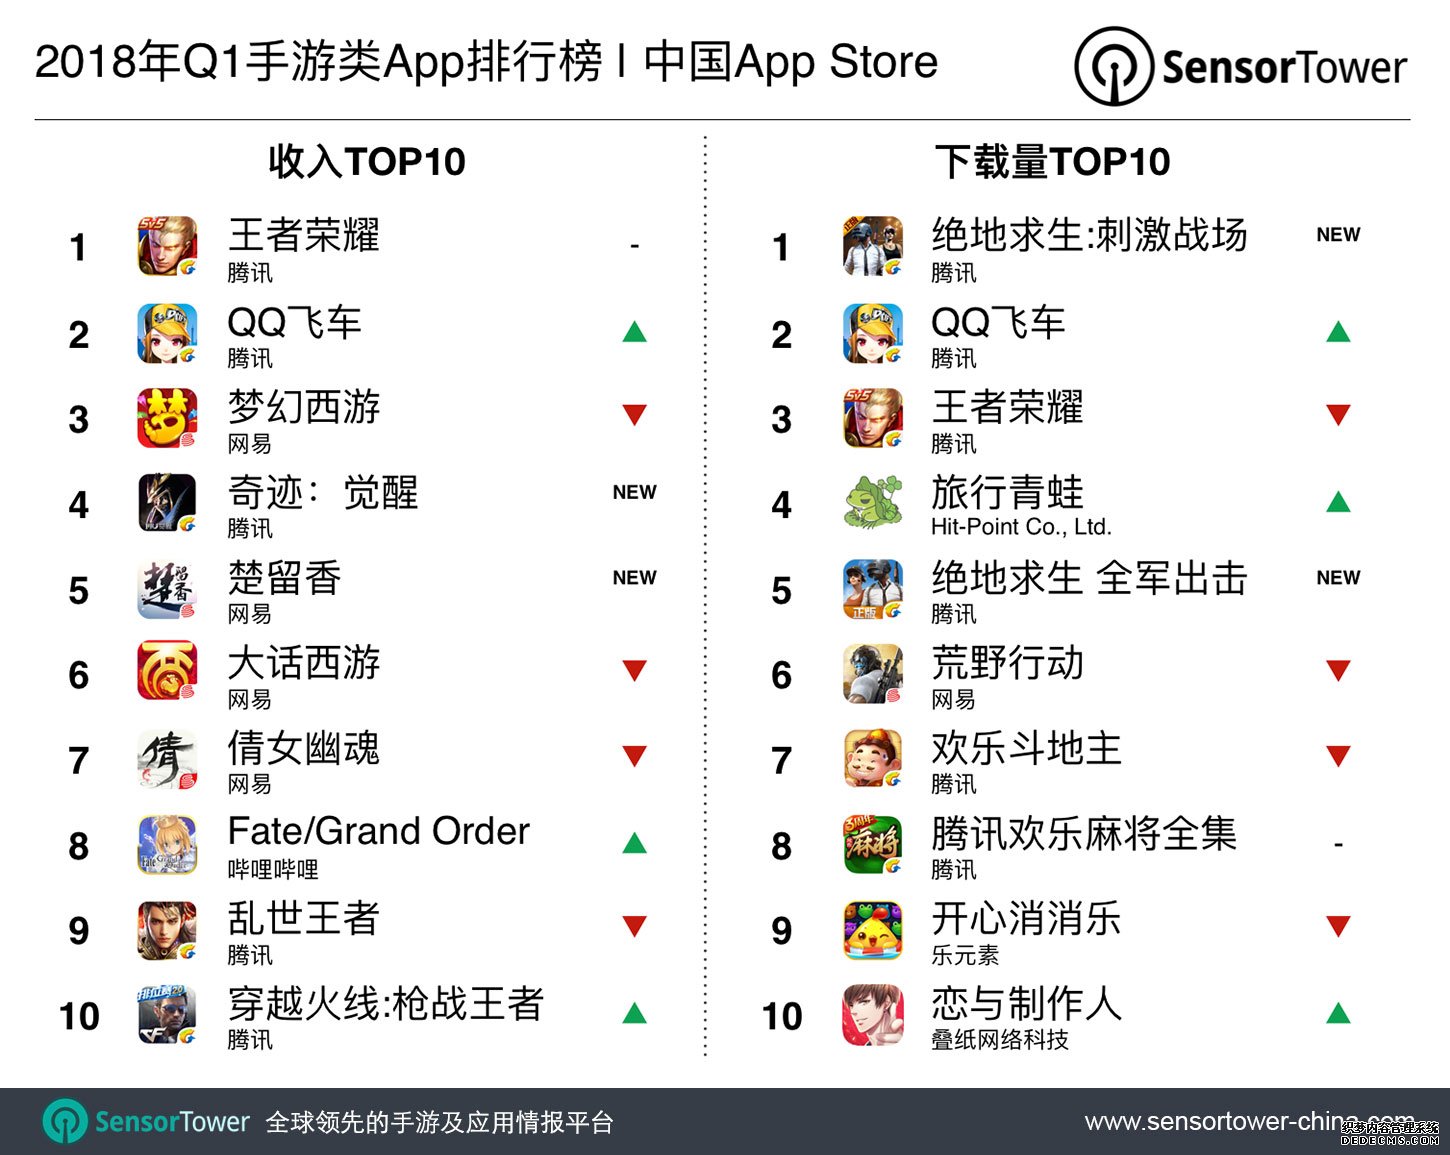 2018年第一季度中国AppStore数据分析和平精英模拟器外挂：《绝地求生:和平精英》引领下载量榜单